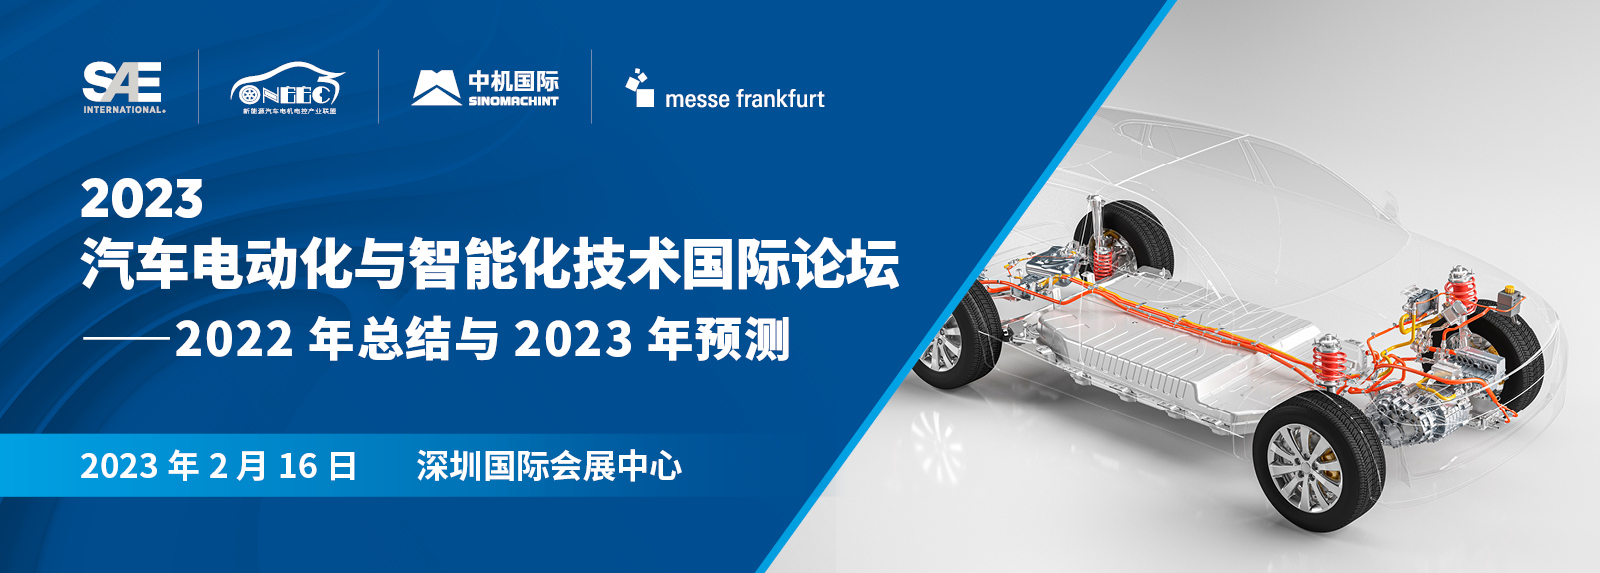 2023 汽车电动化与智能化技术国际论坛